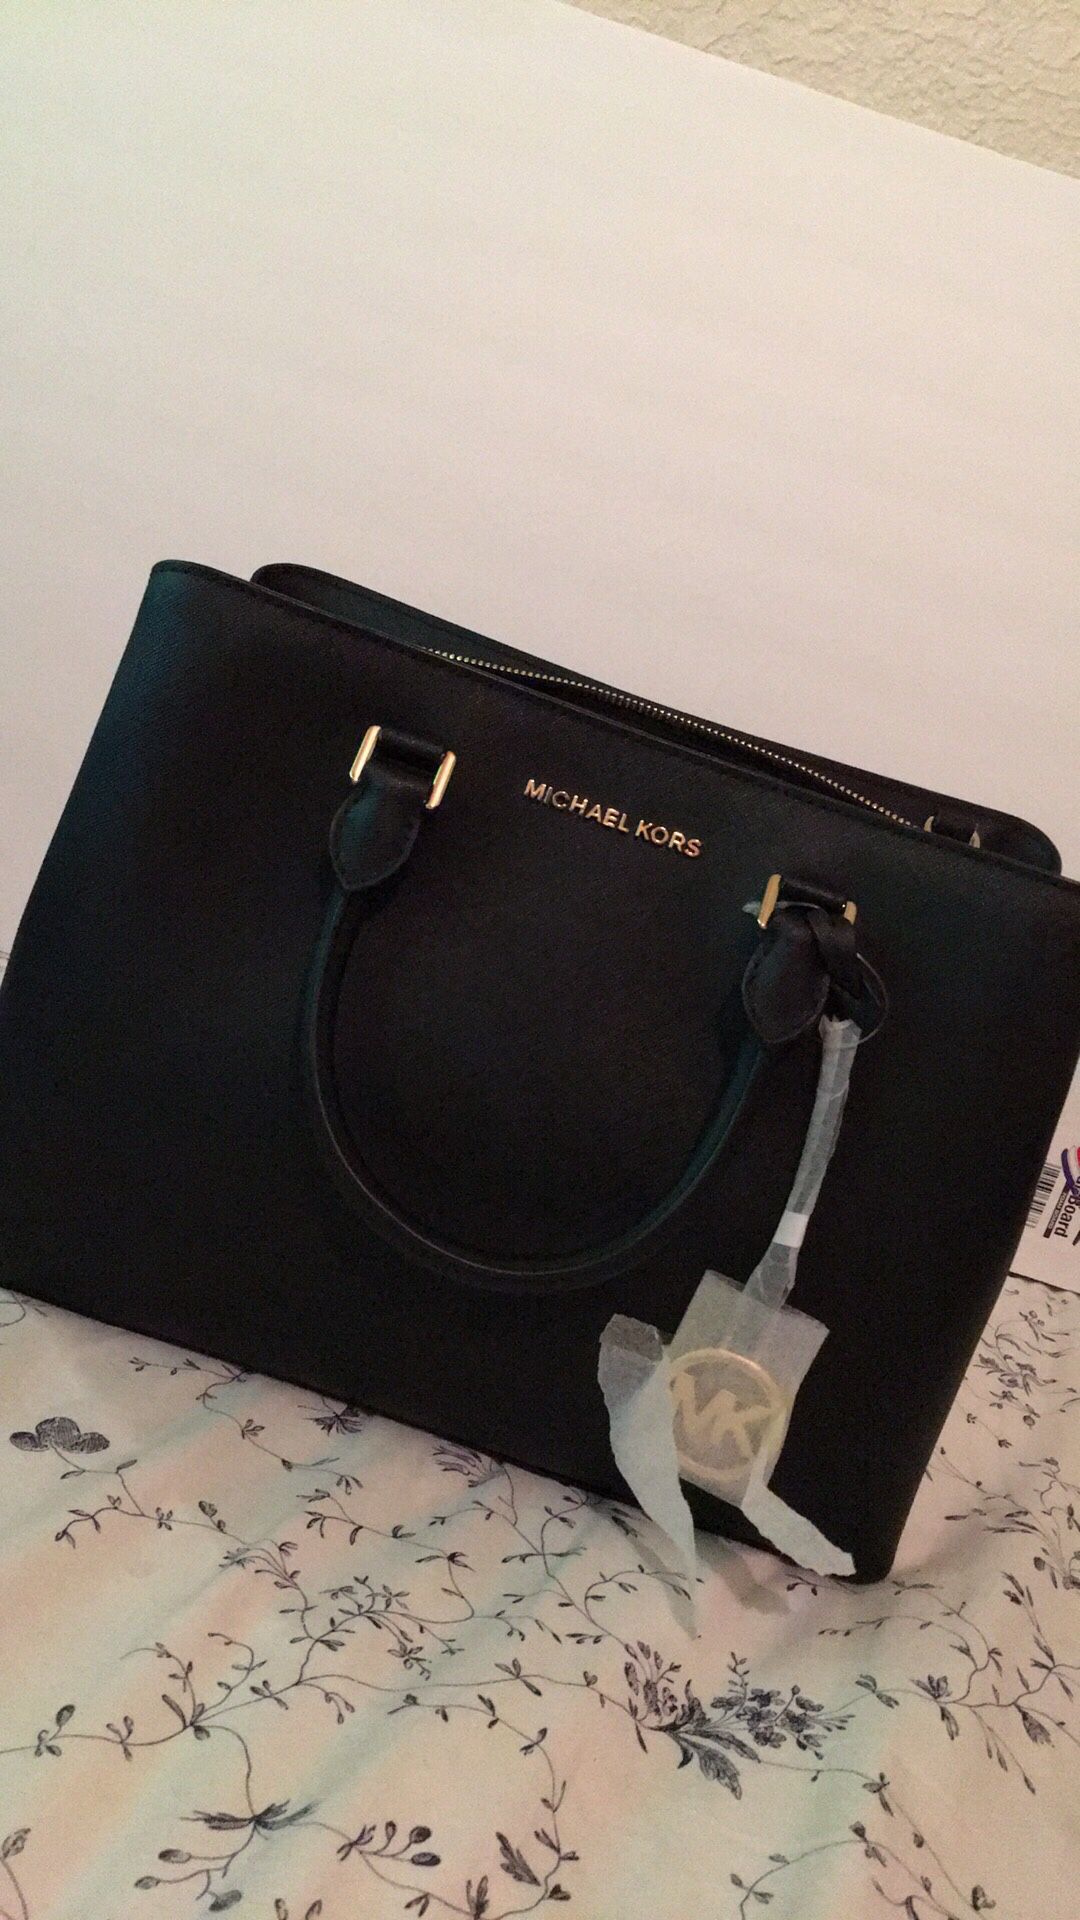 Handbag Michael Kors new with tag body cross handle